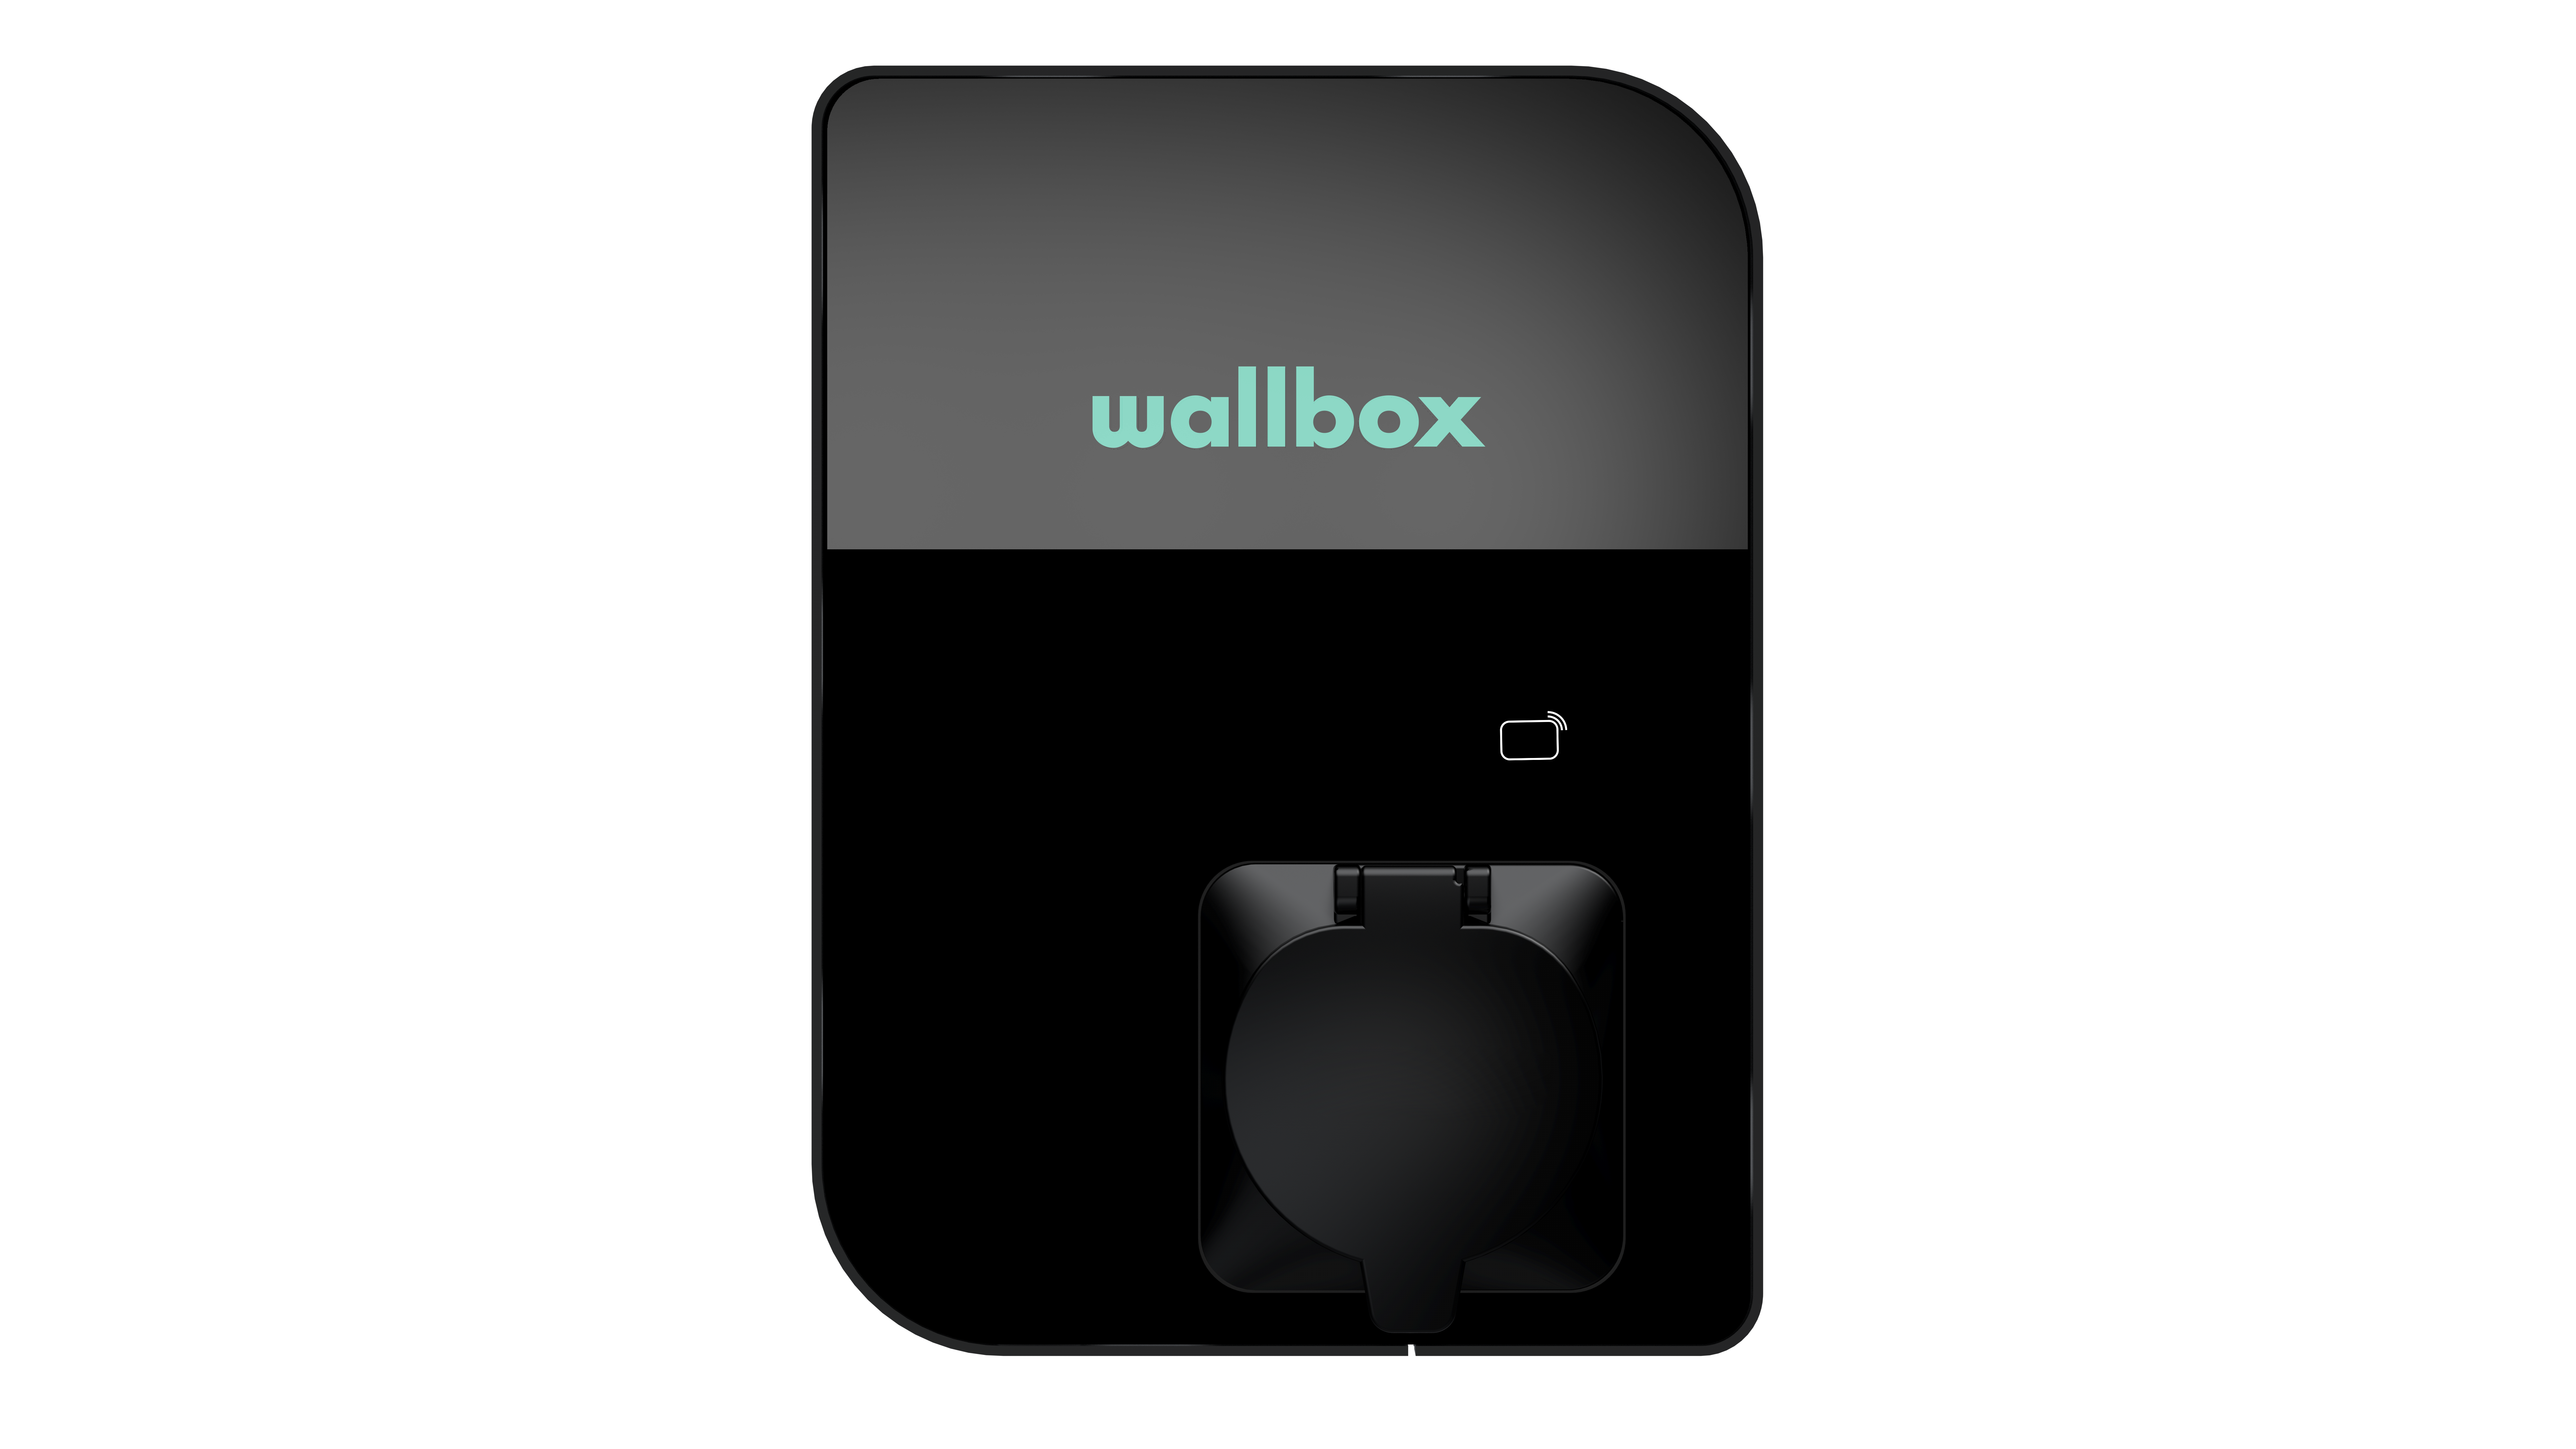 AKTION: Wallbox Commander 2 Stecker, für üblichen und inkl. 4G Anbindung, kostenloser mit anstatt Jahre oder Kabellänge, 2 2 22kW - Typ (UMTS) 3 Jahre 7m Jahre 11kW 10 den Teutschtech Steckerhalter Garantie Anbindung